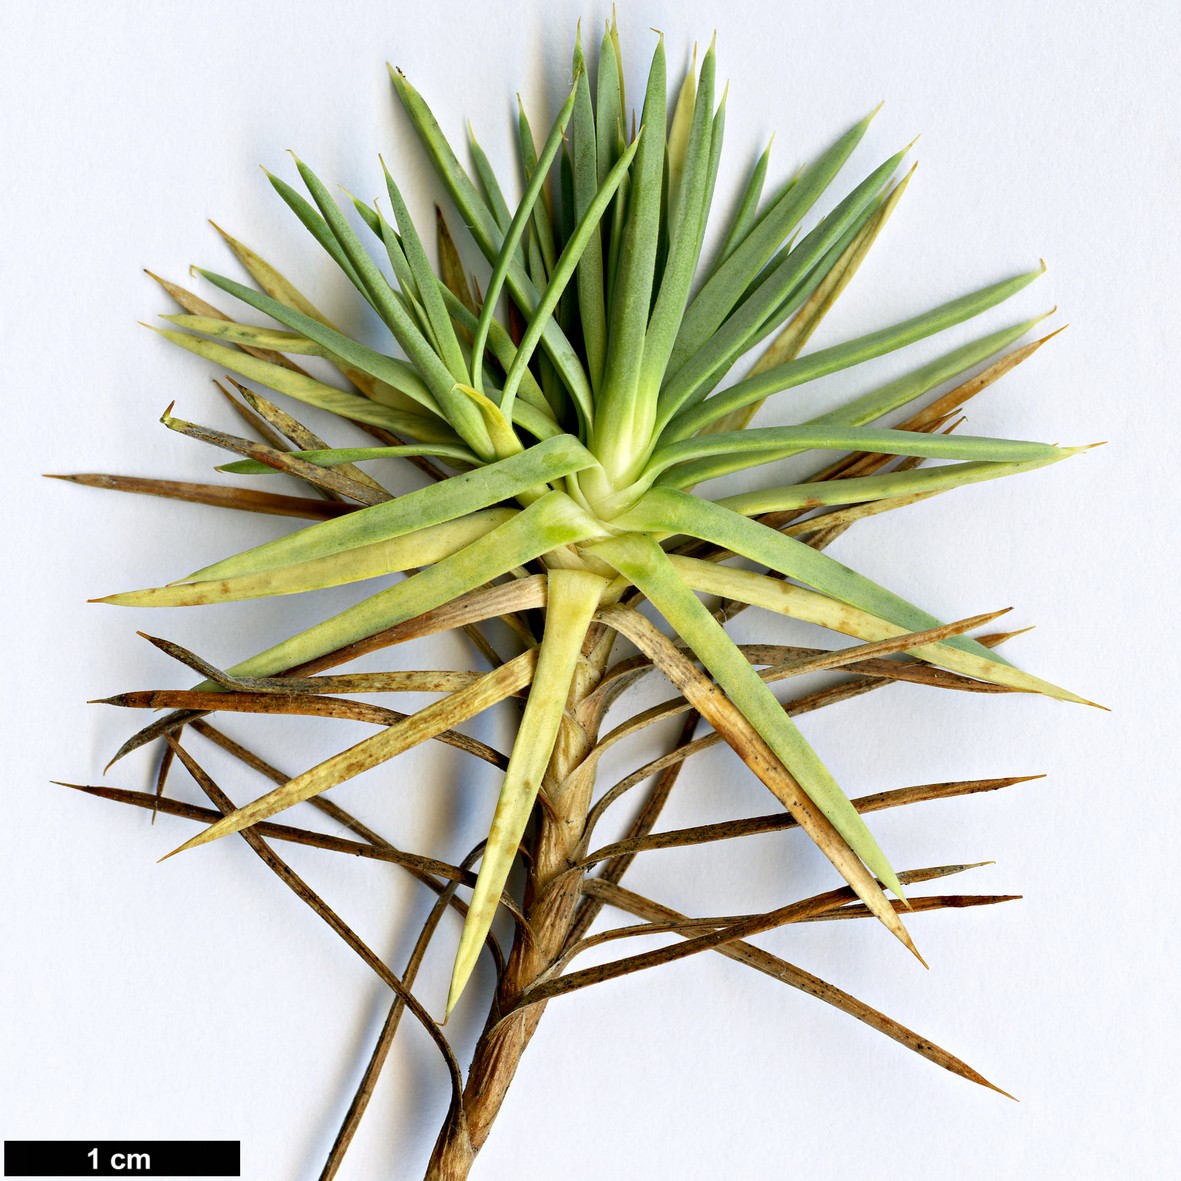 High resolution image: Family: Plumbaginaceae - Genus: Acantholimon - Taxon: ulicinum - SpeciesSub: var. creticum